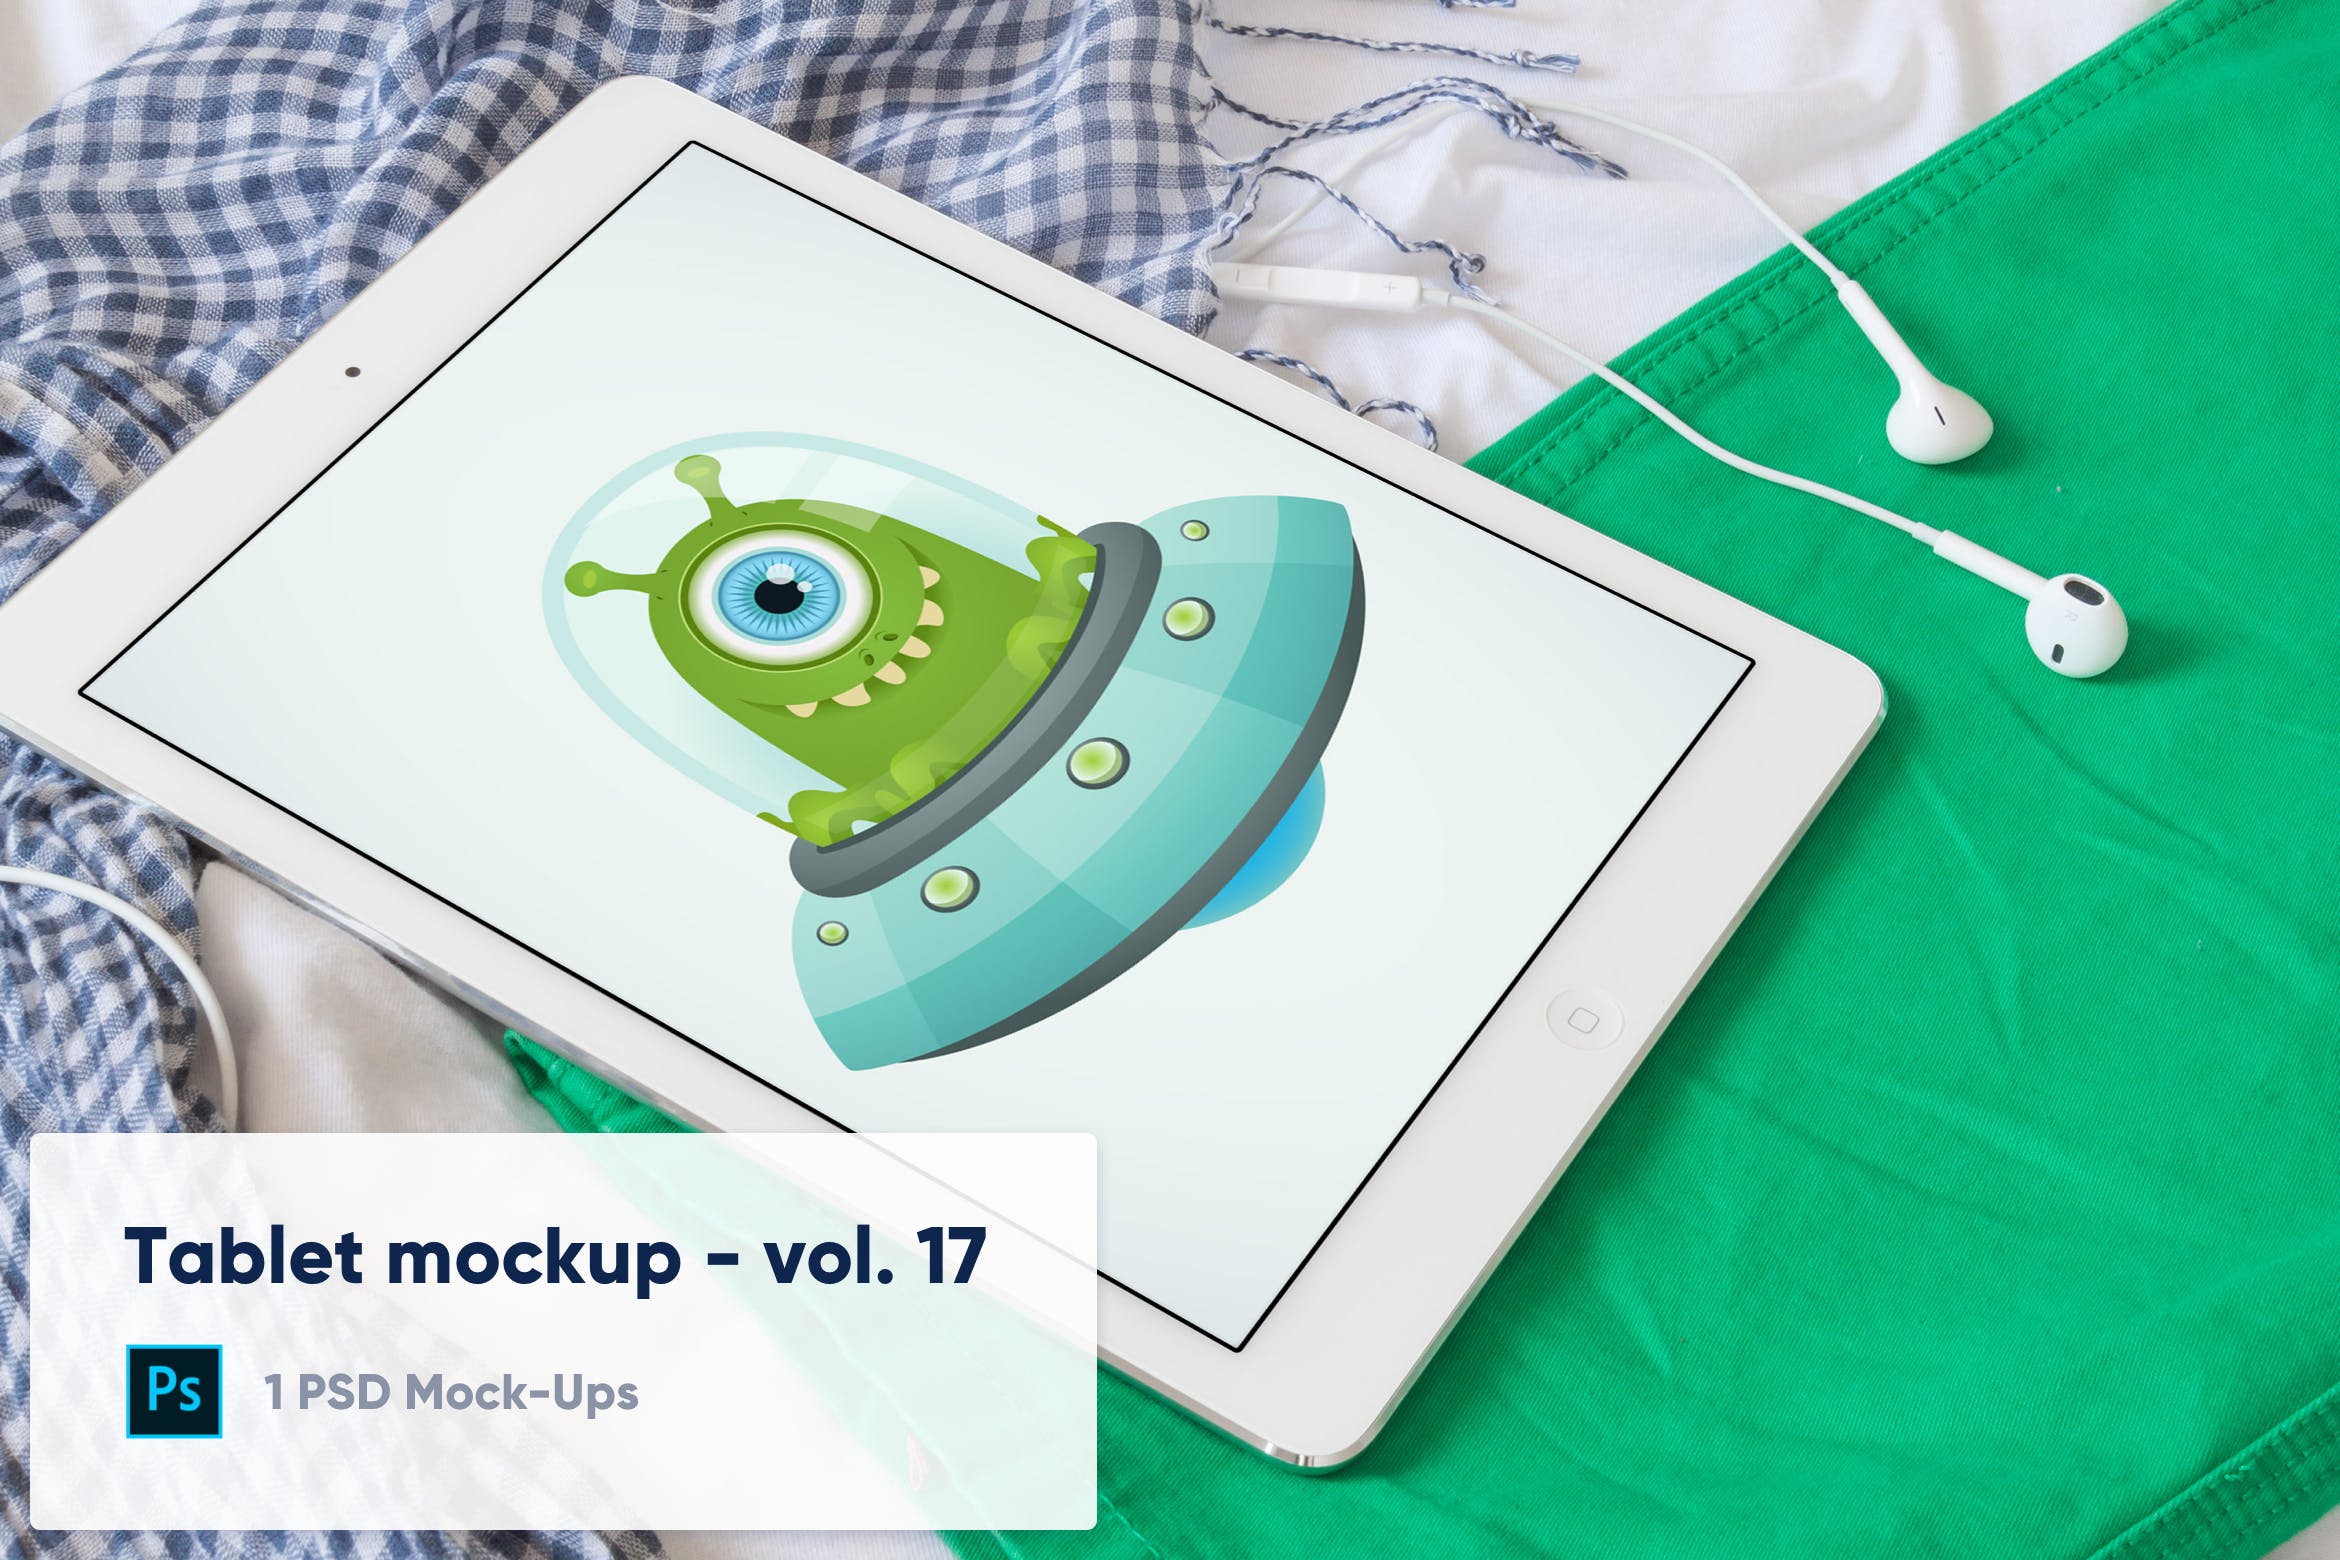 居家环境场景平板电脑屏幕演示素材库精选样机模板v17 Tablet on Colorful Clothes Mockup – Vol. 17插图